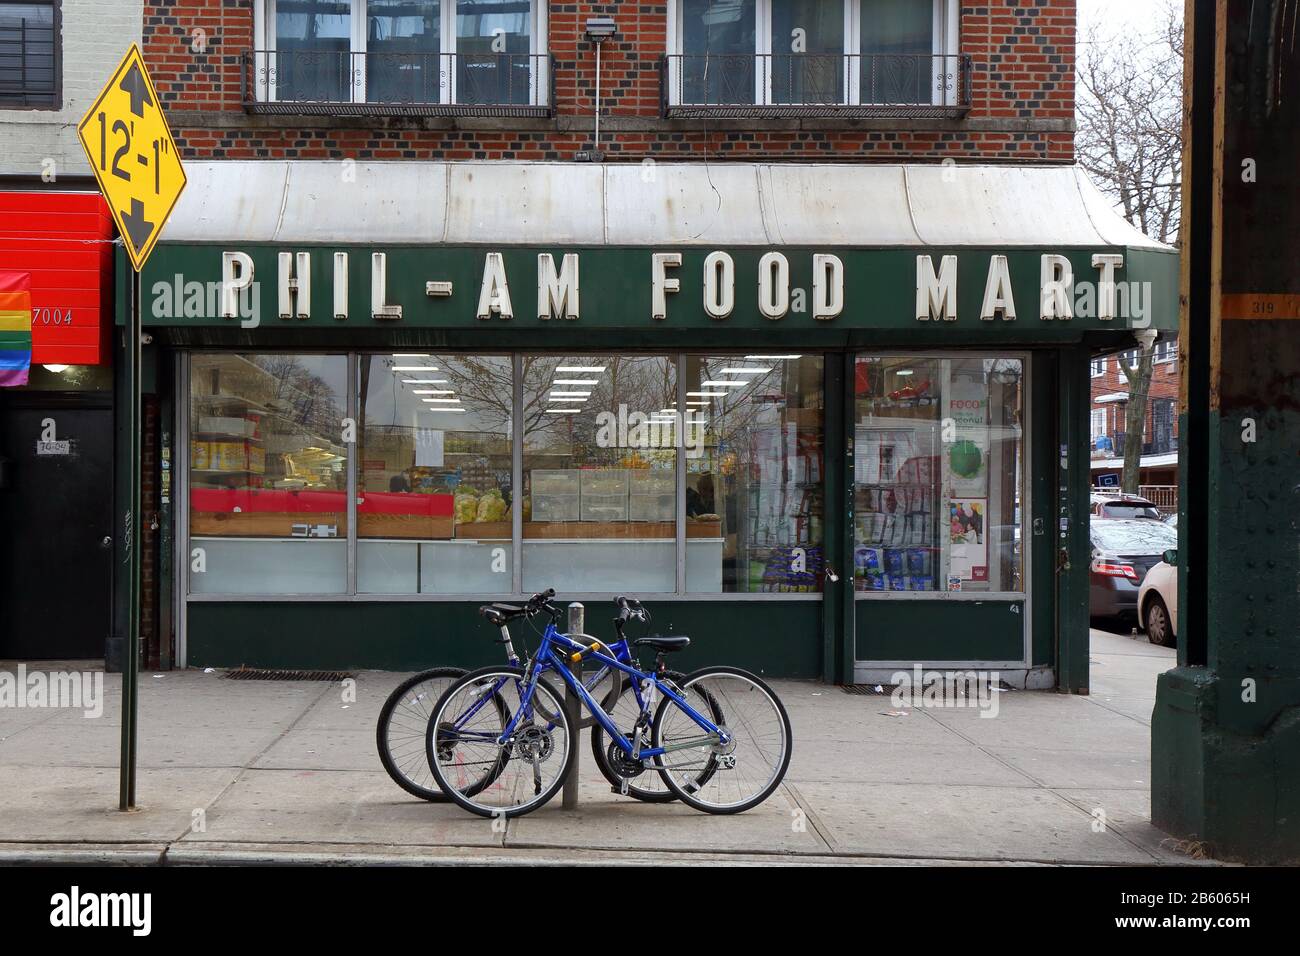 Phil-am Food Mart, 40-03 70. Street, Queens, New York. NYC-Schaufensterfoto eines philippinischen Lebensmittelladens im Stadtteil Woodside. Stockfoto